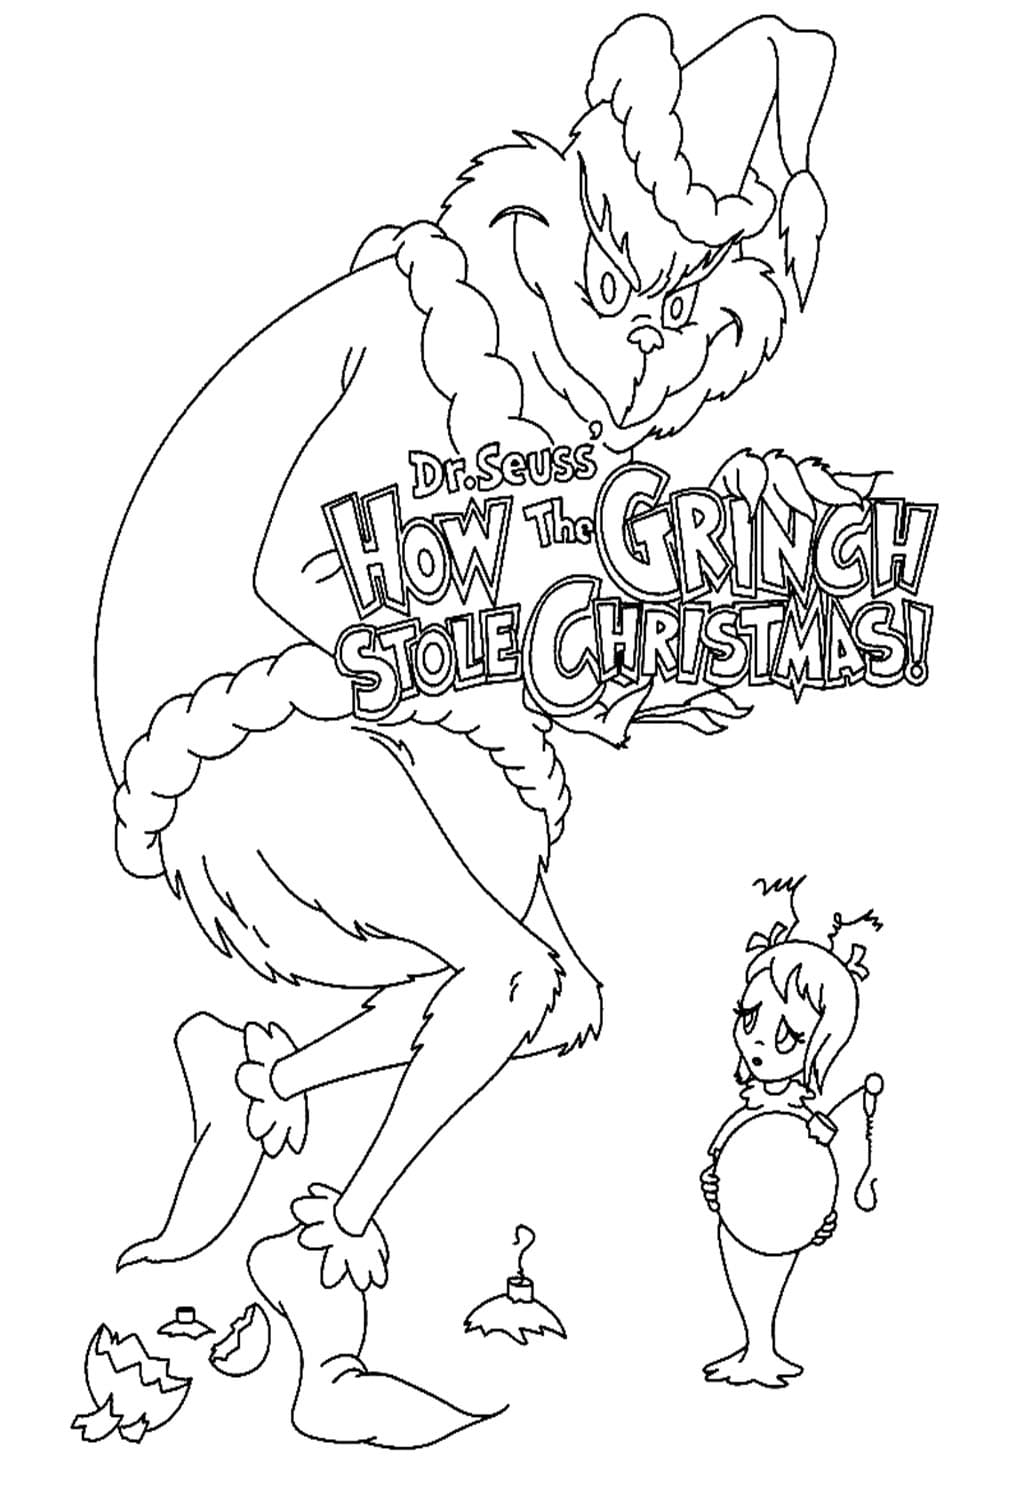 Гринч украл рождественский постер у Гринча